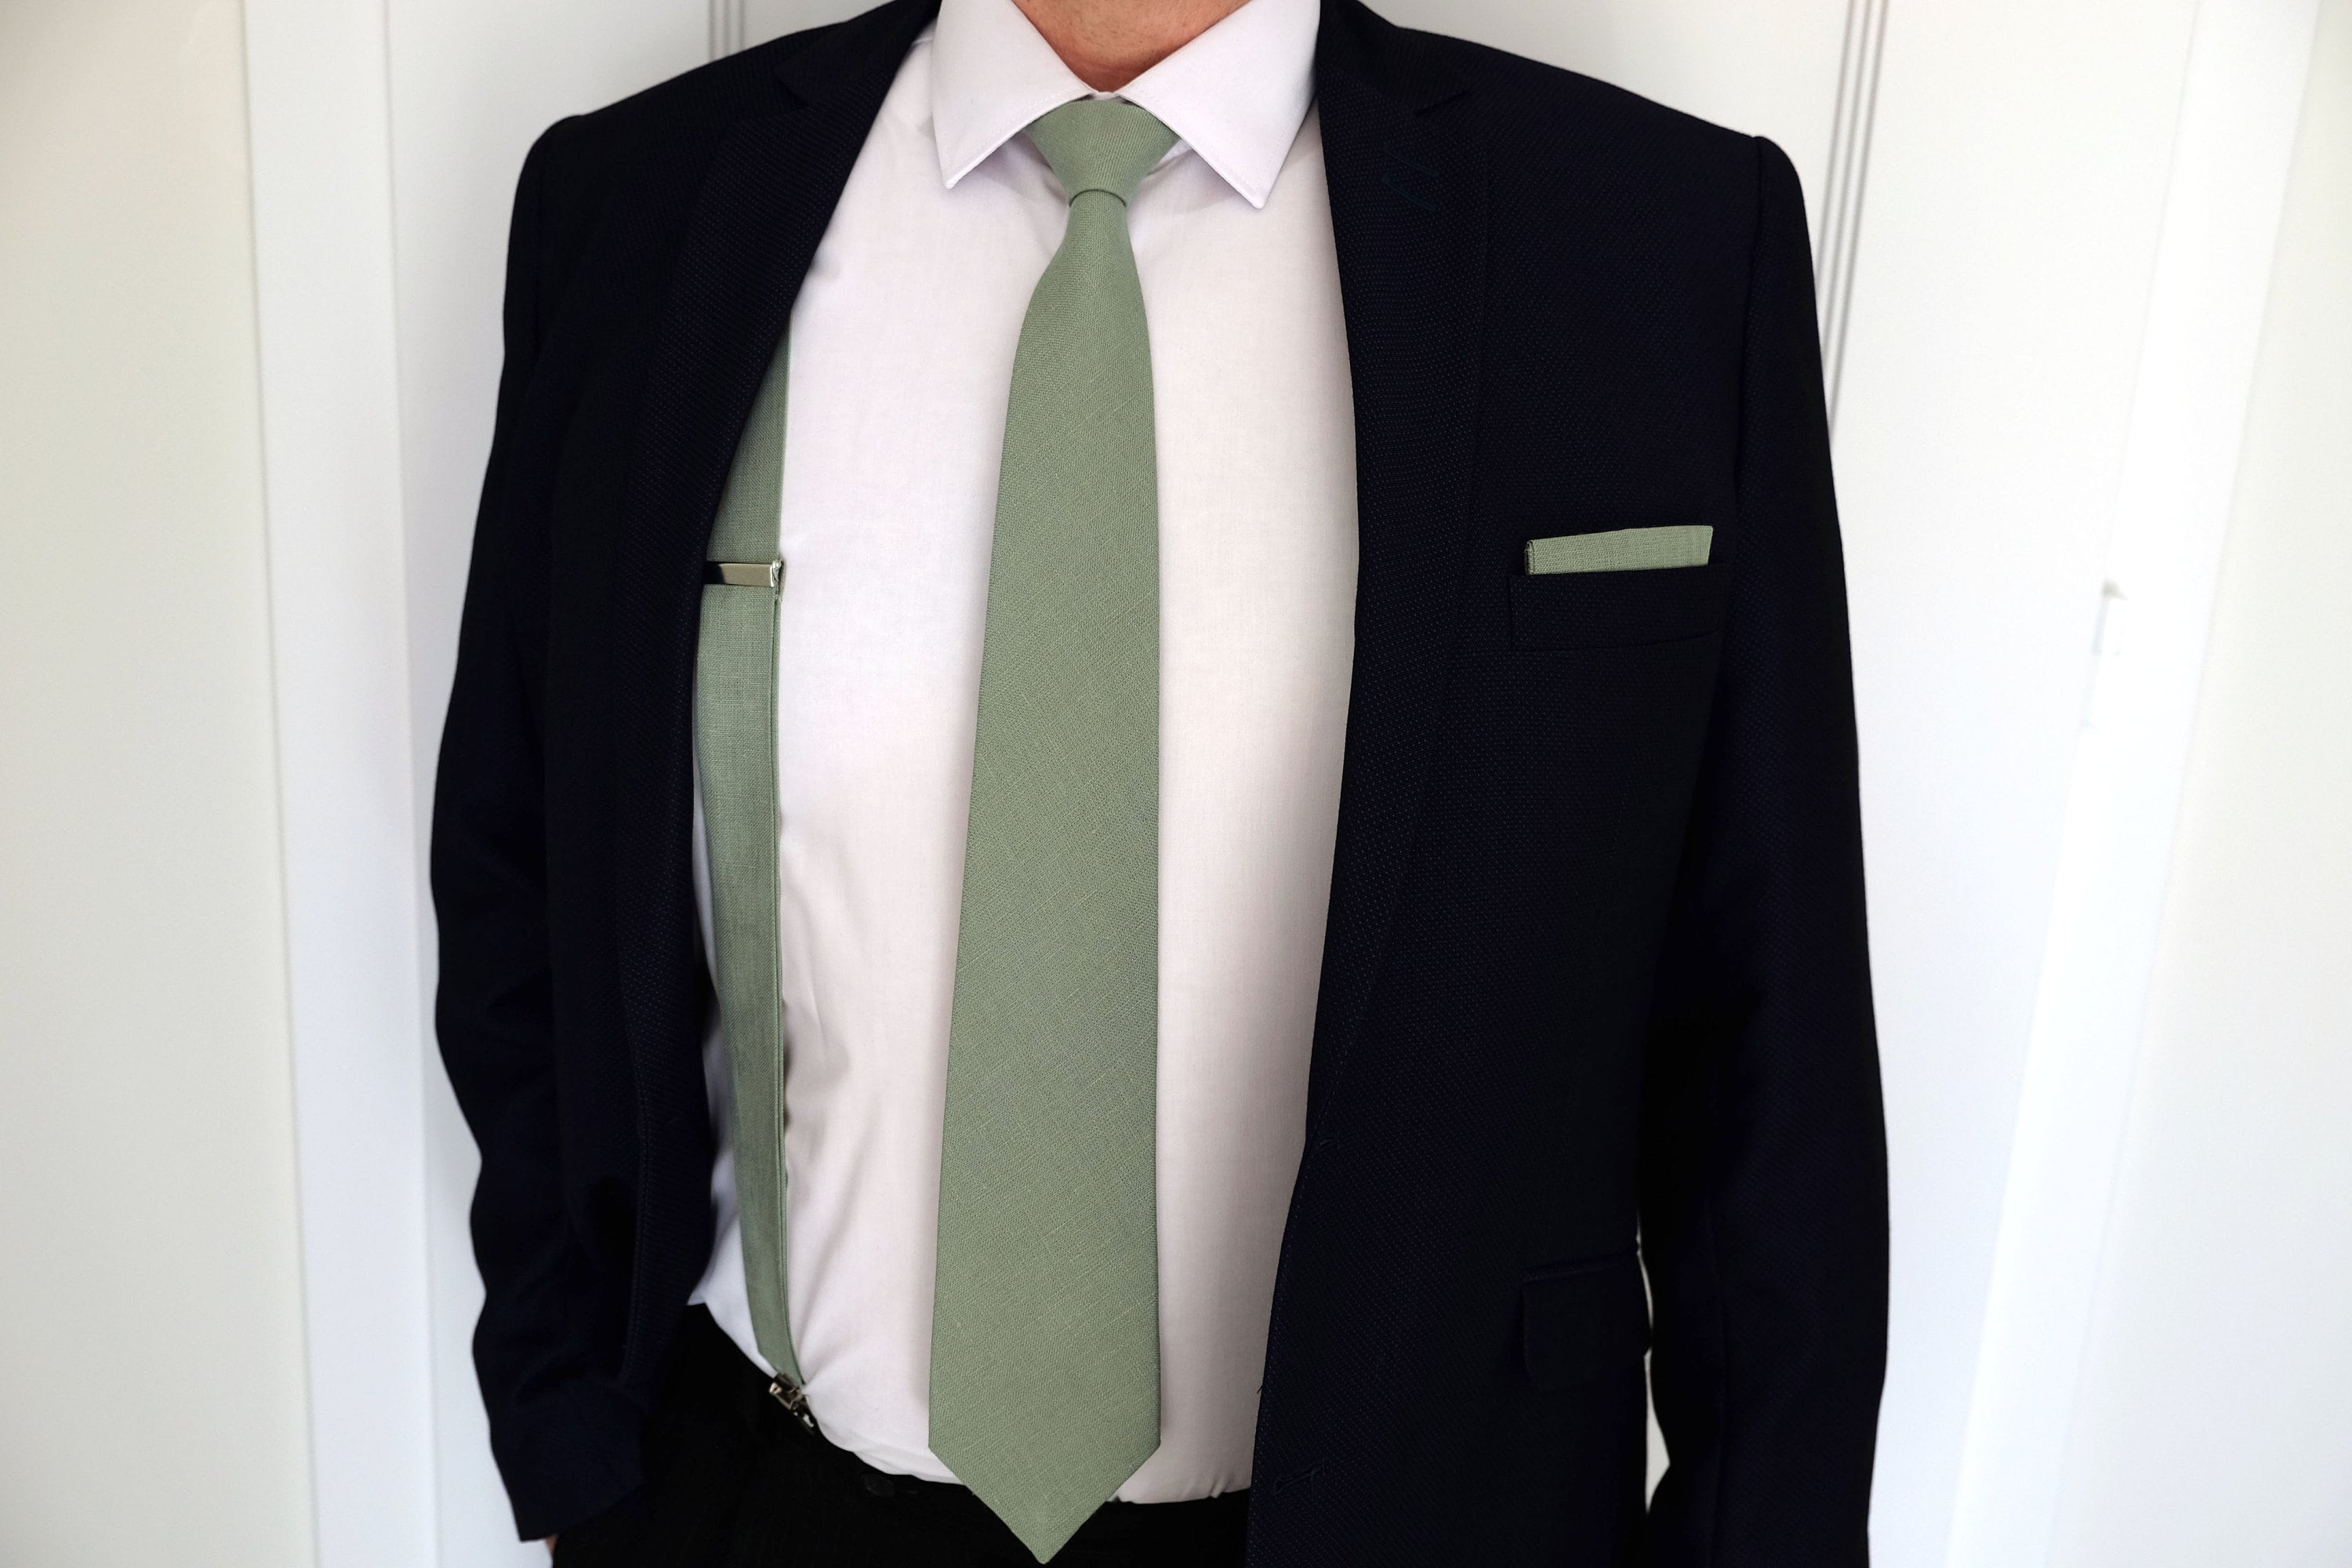 Cravate vert fluo pailletée 37cm - Partywinkel